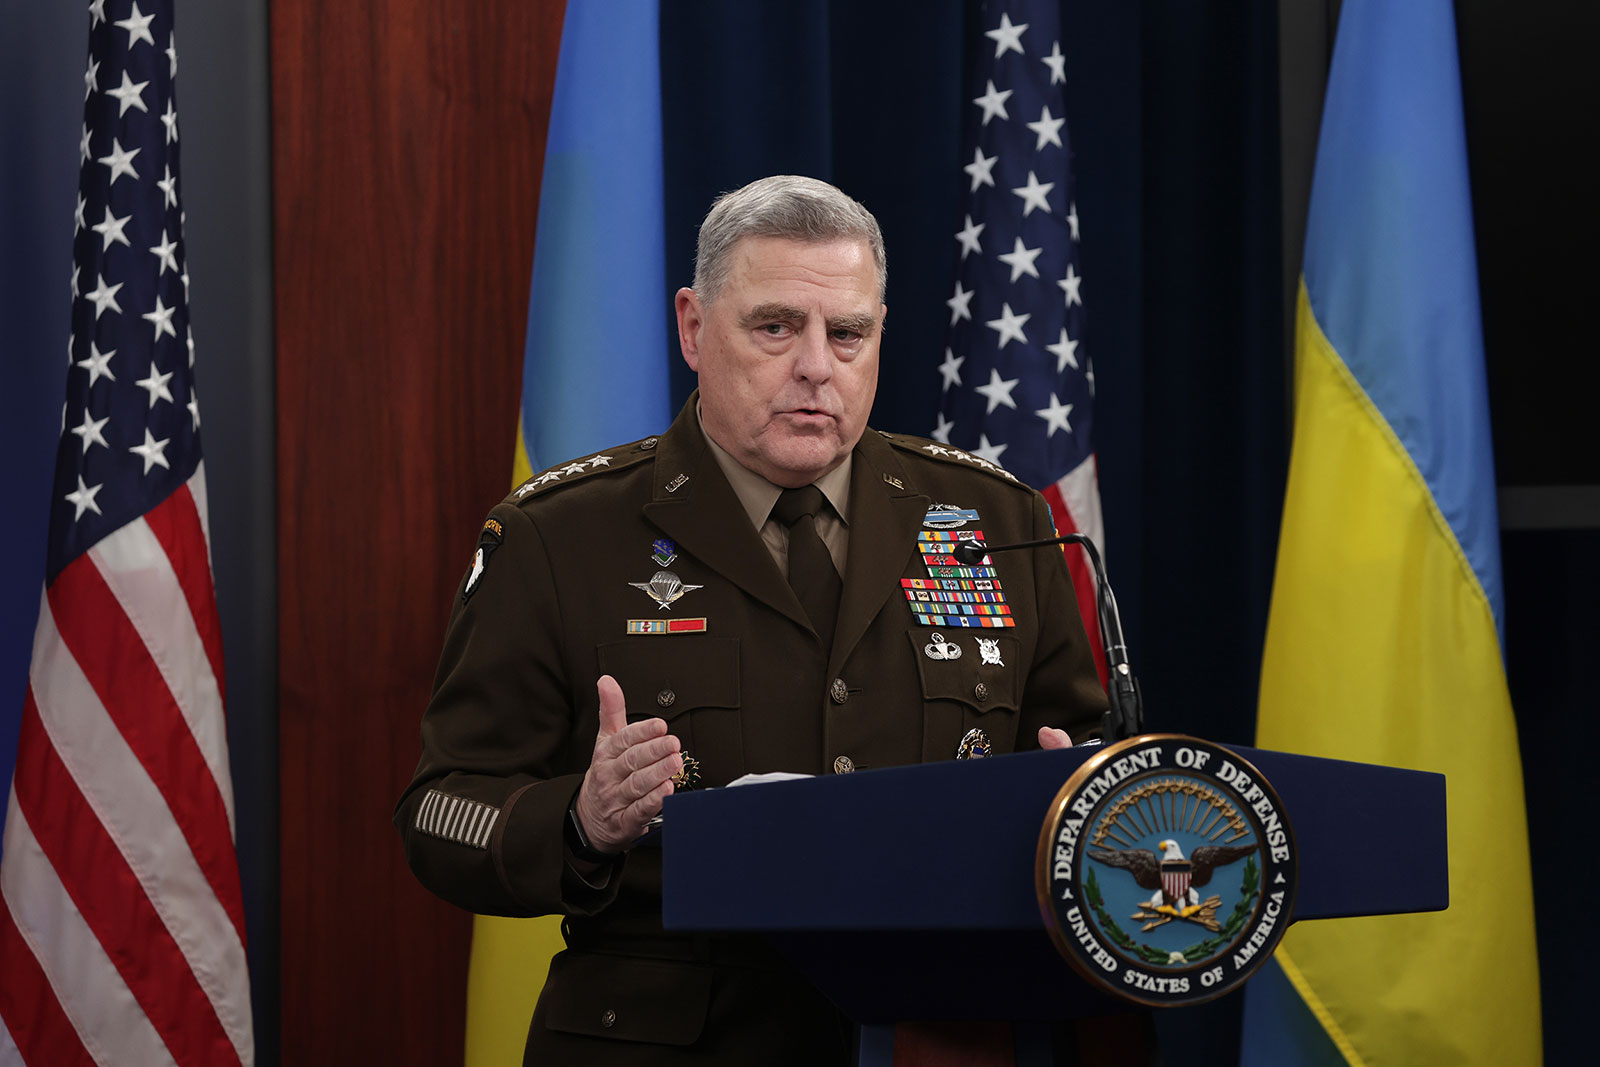 Ukraine muốn sớm đẩy lùi Nga hoàn toàn khỏi lãnh thổ: Tướng cấp cao Mỹ nói gì?